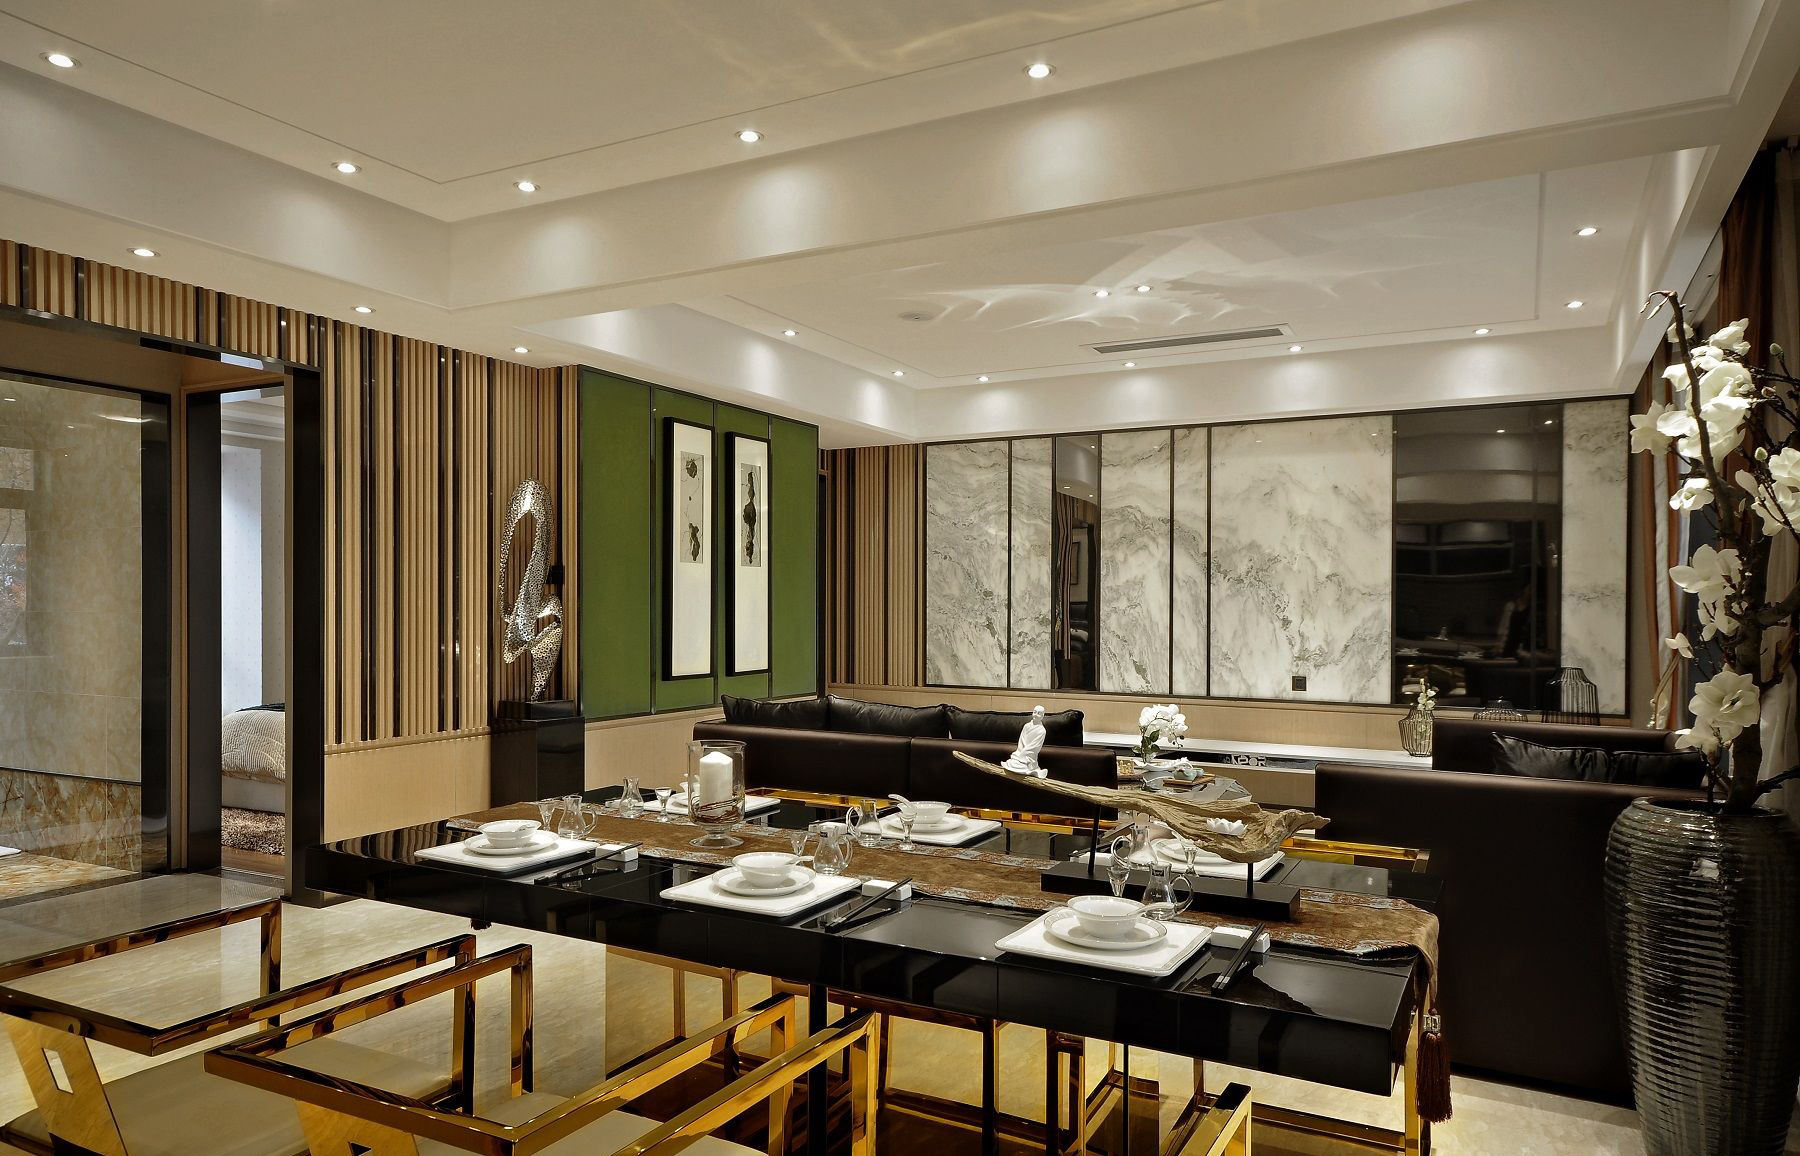 新中式风格餐厅桌面效果图